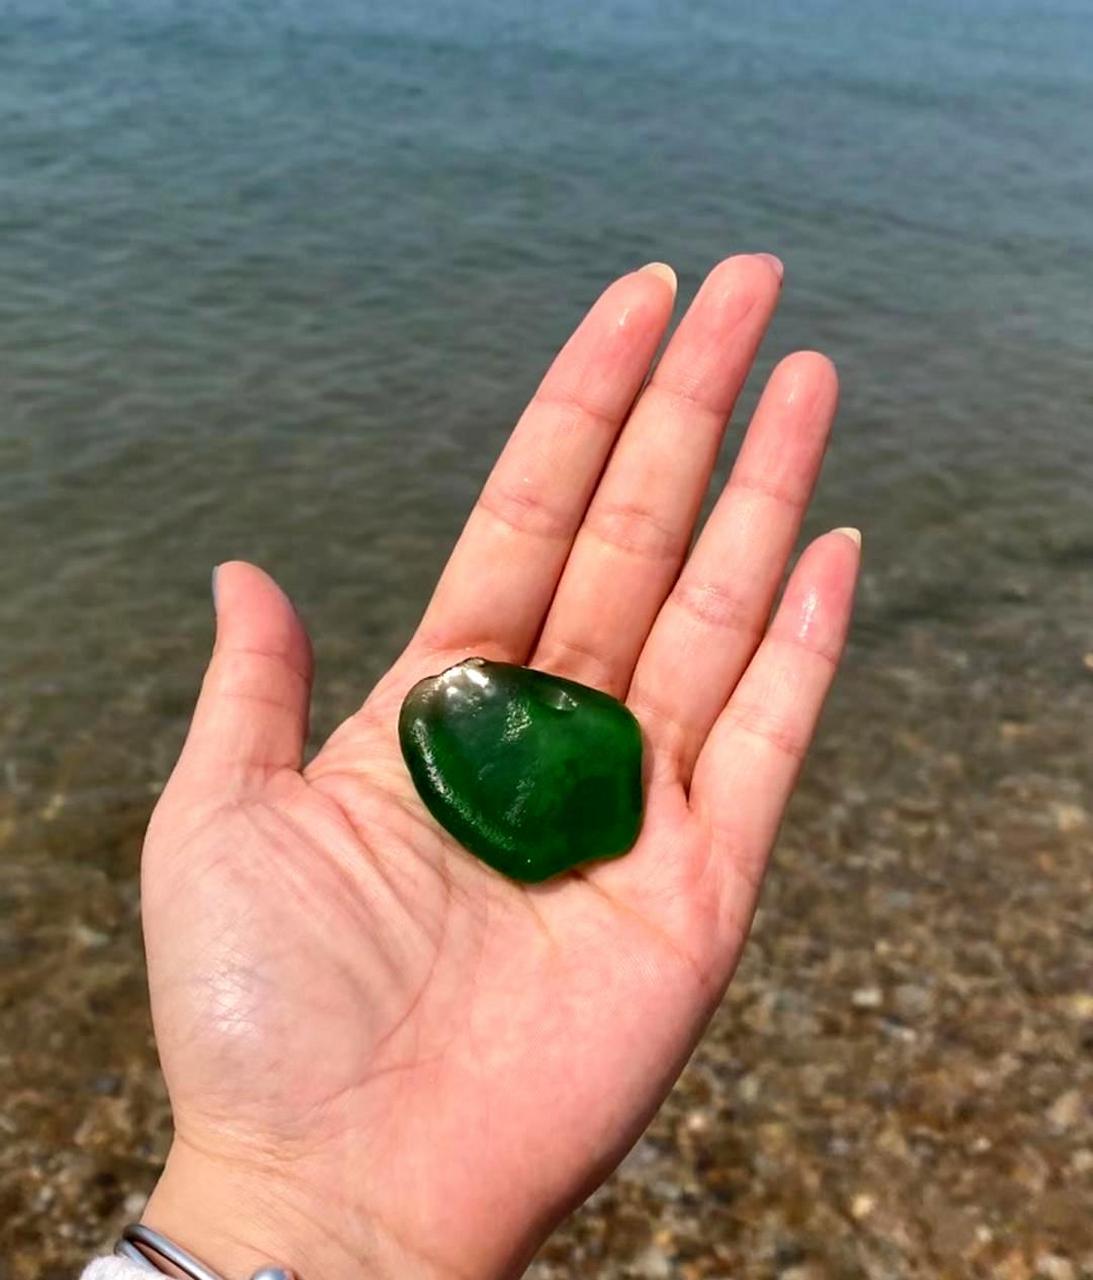 在海边捡到的绿色宝石非常漂亮,想知道它是什么